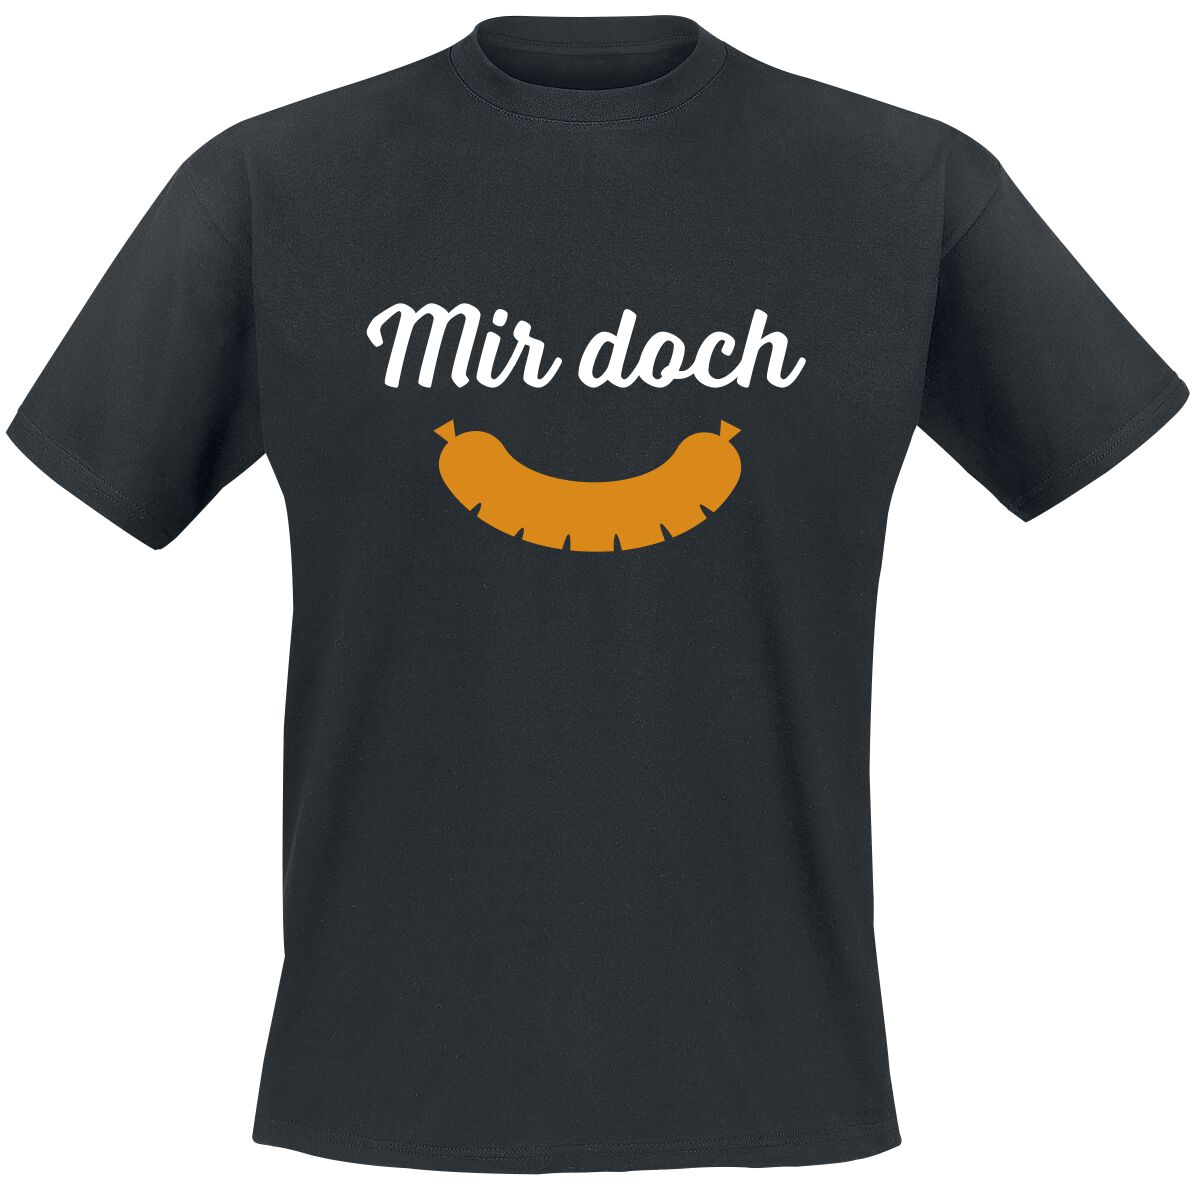 Food T-Shirt - Mir doch Wurst - M bis 5XL - für Männer - Größe 3XL - schwarz